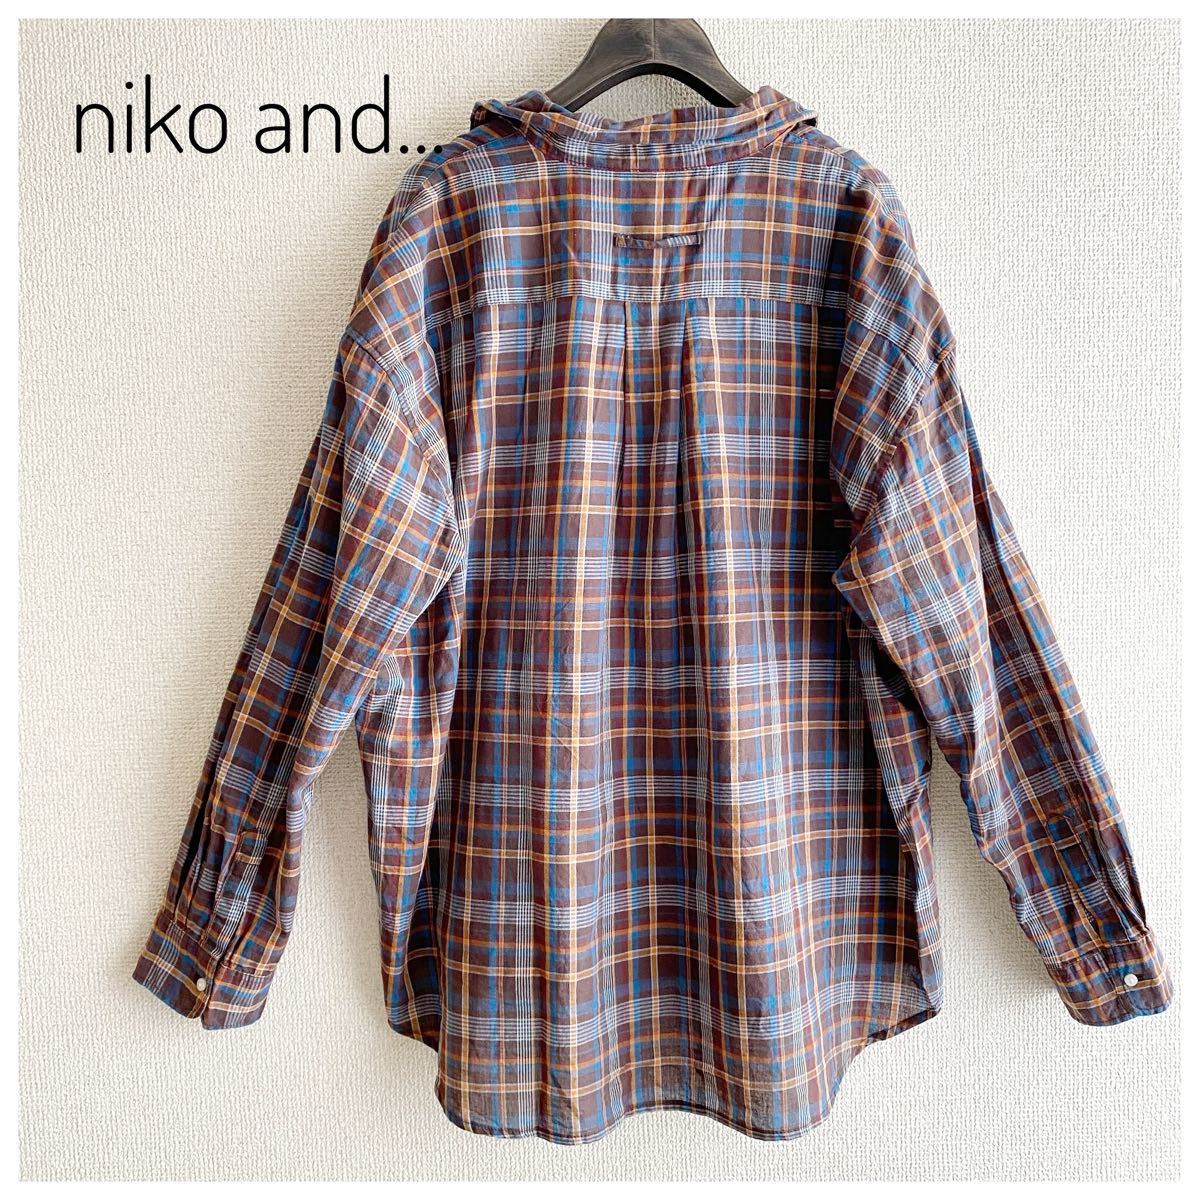 高い品質 niko and...チェック柄コットンシャツ 送料無料6%OFF-ファッション,レディースファッション - ekumudini.com